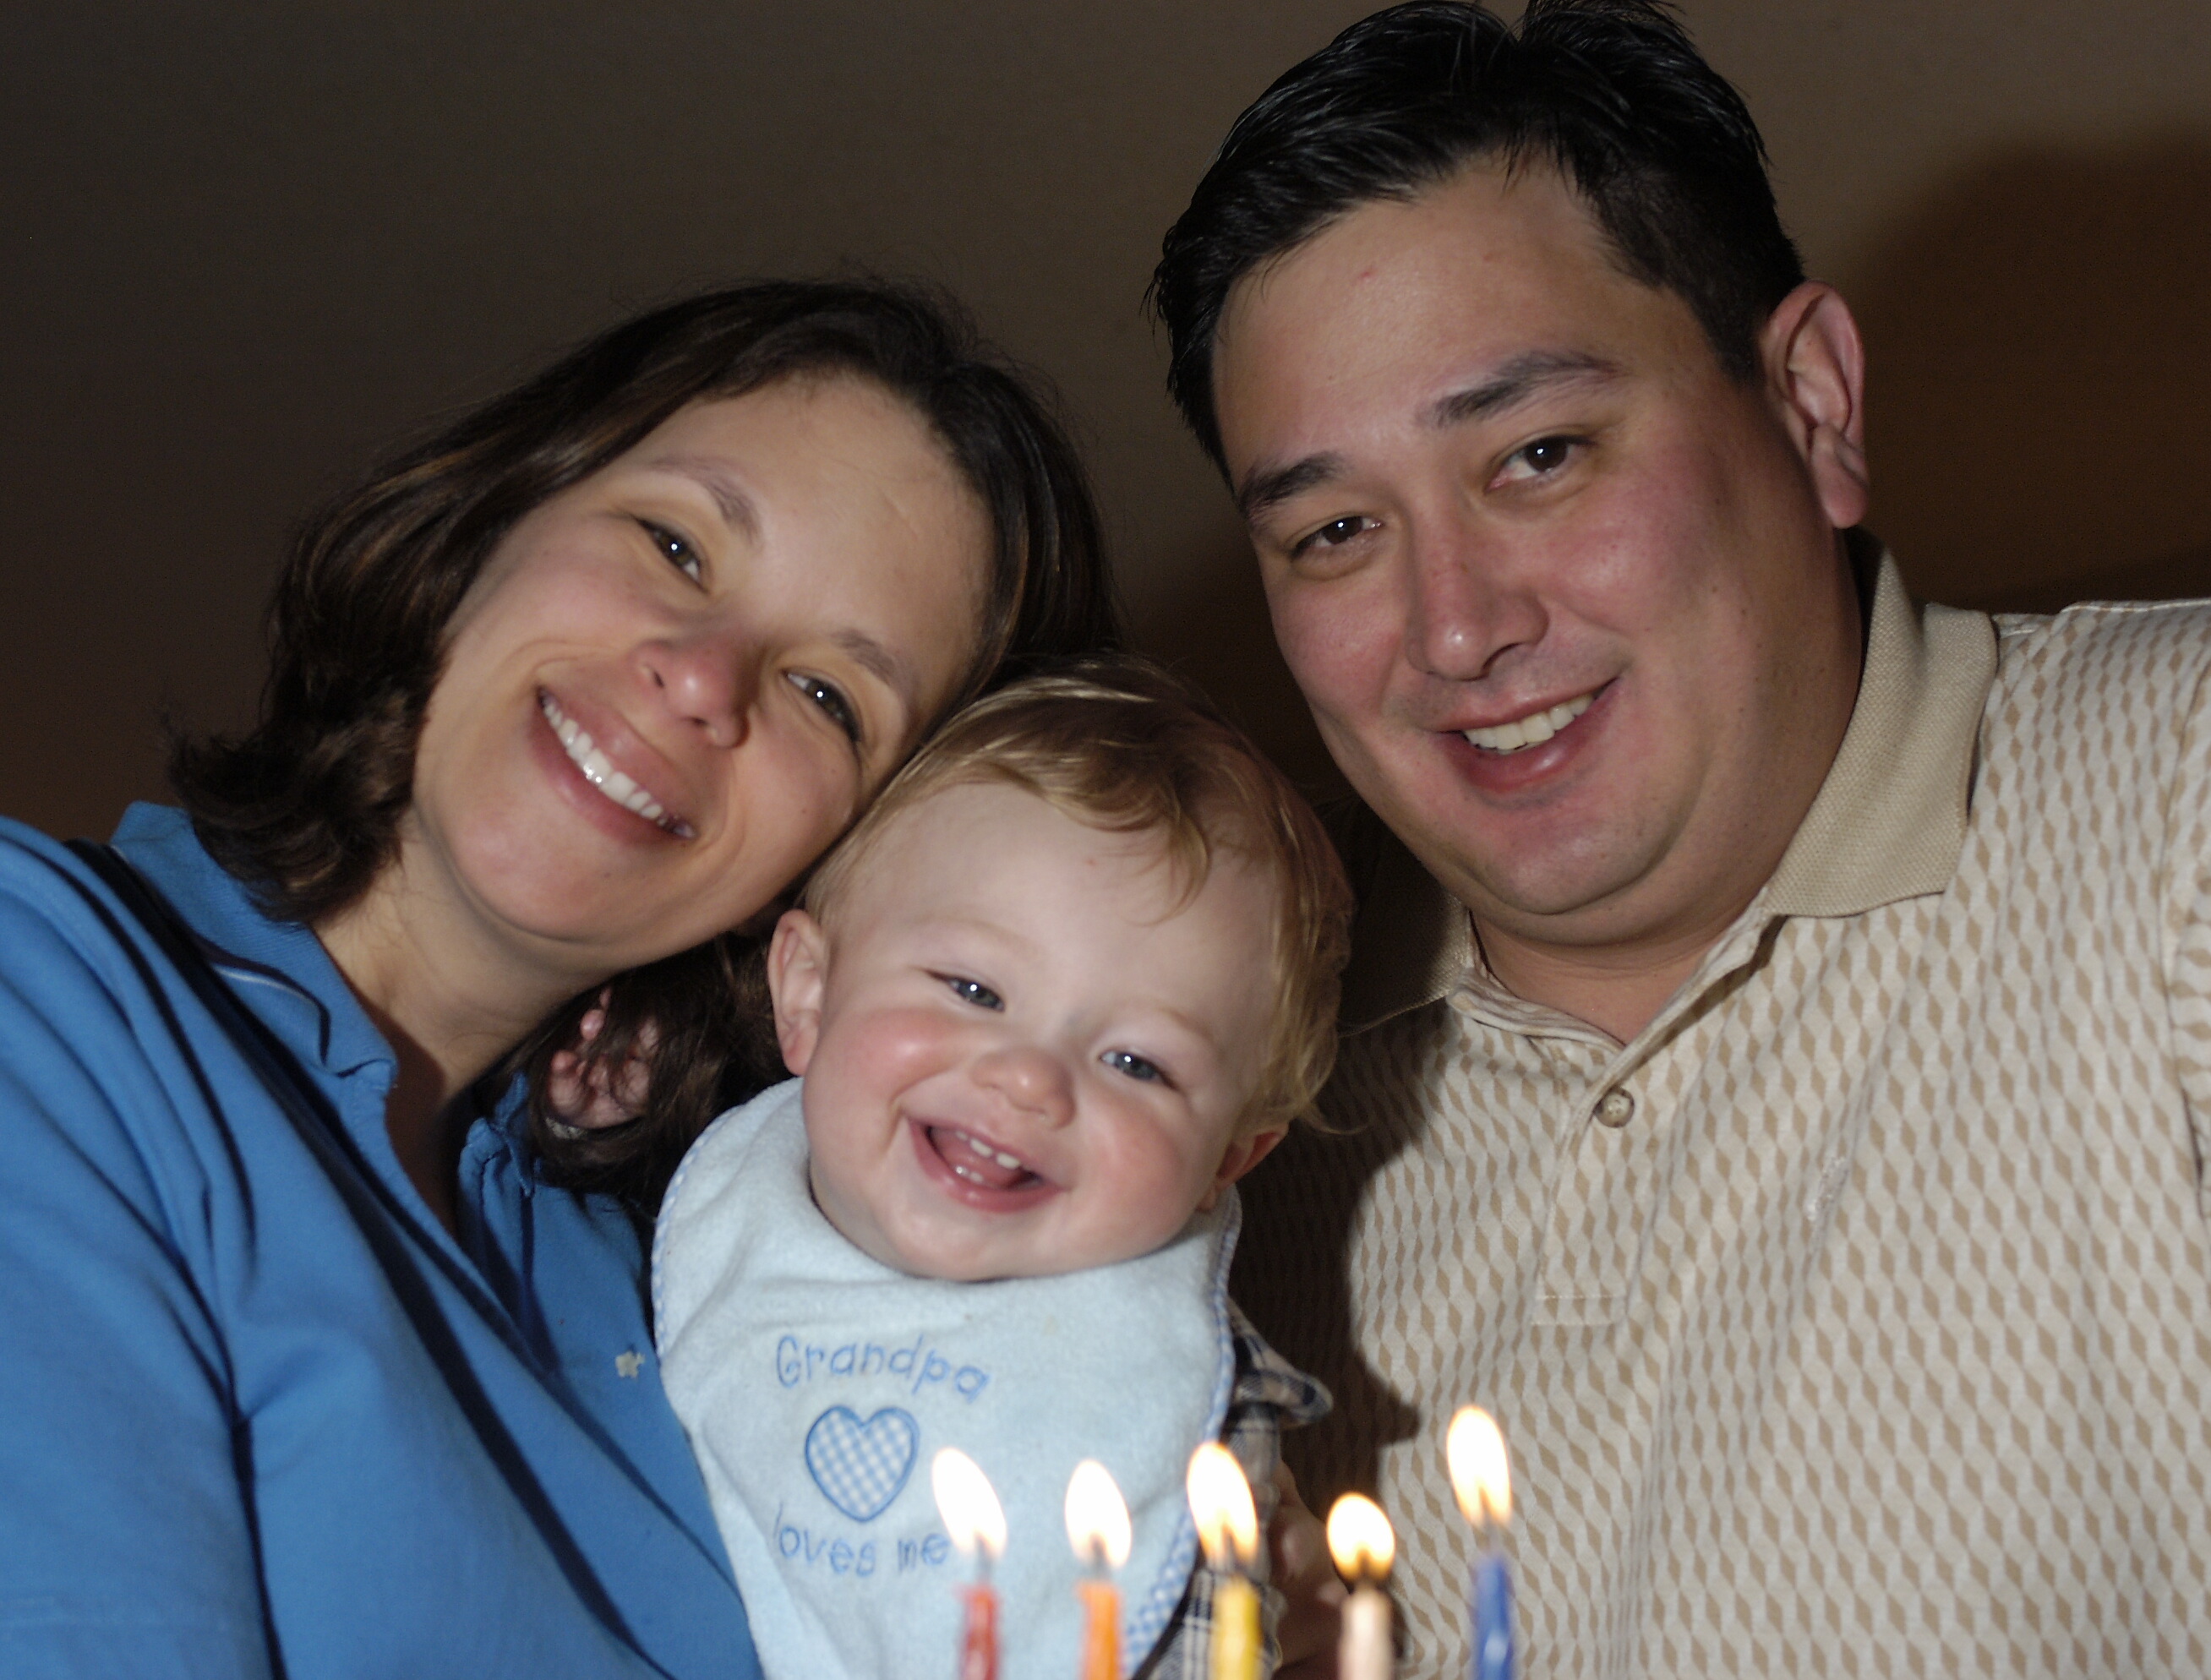 jacob and mom and dad at hanukkah.jpg